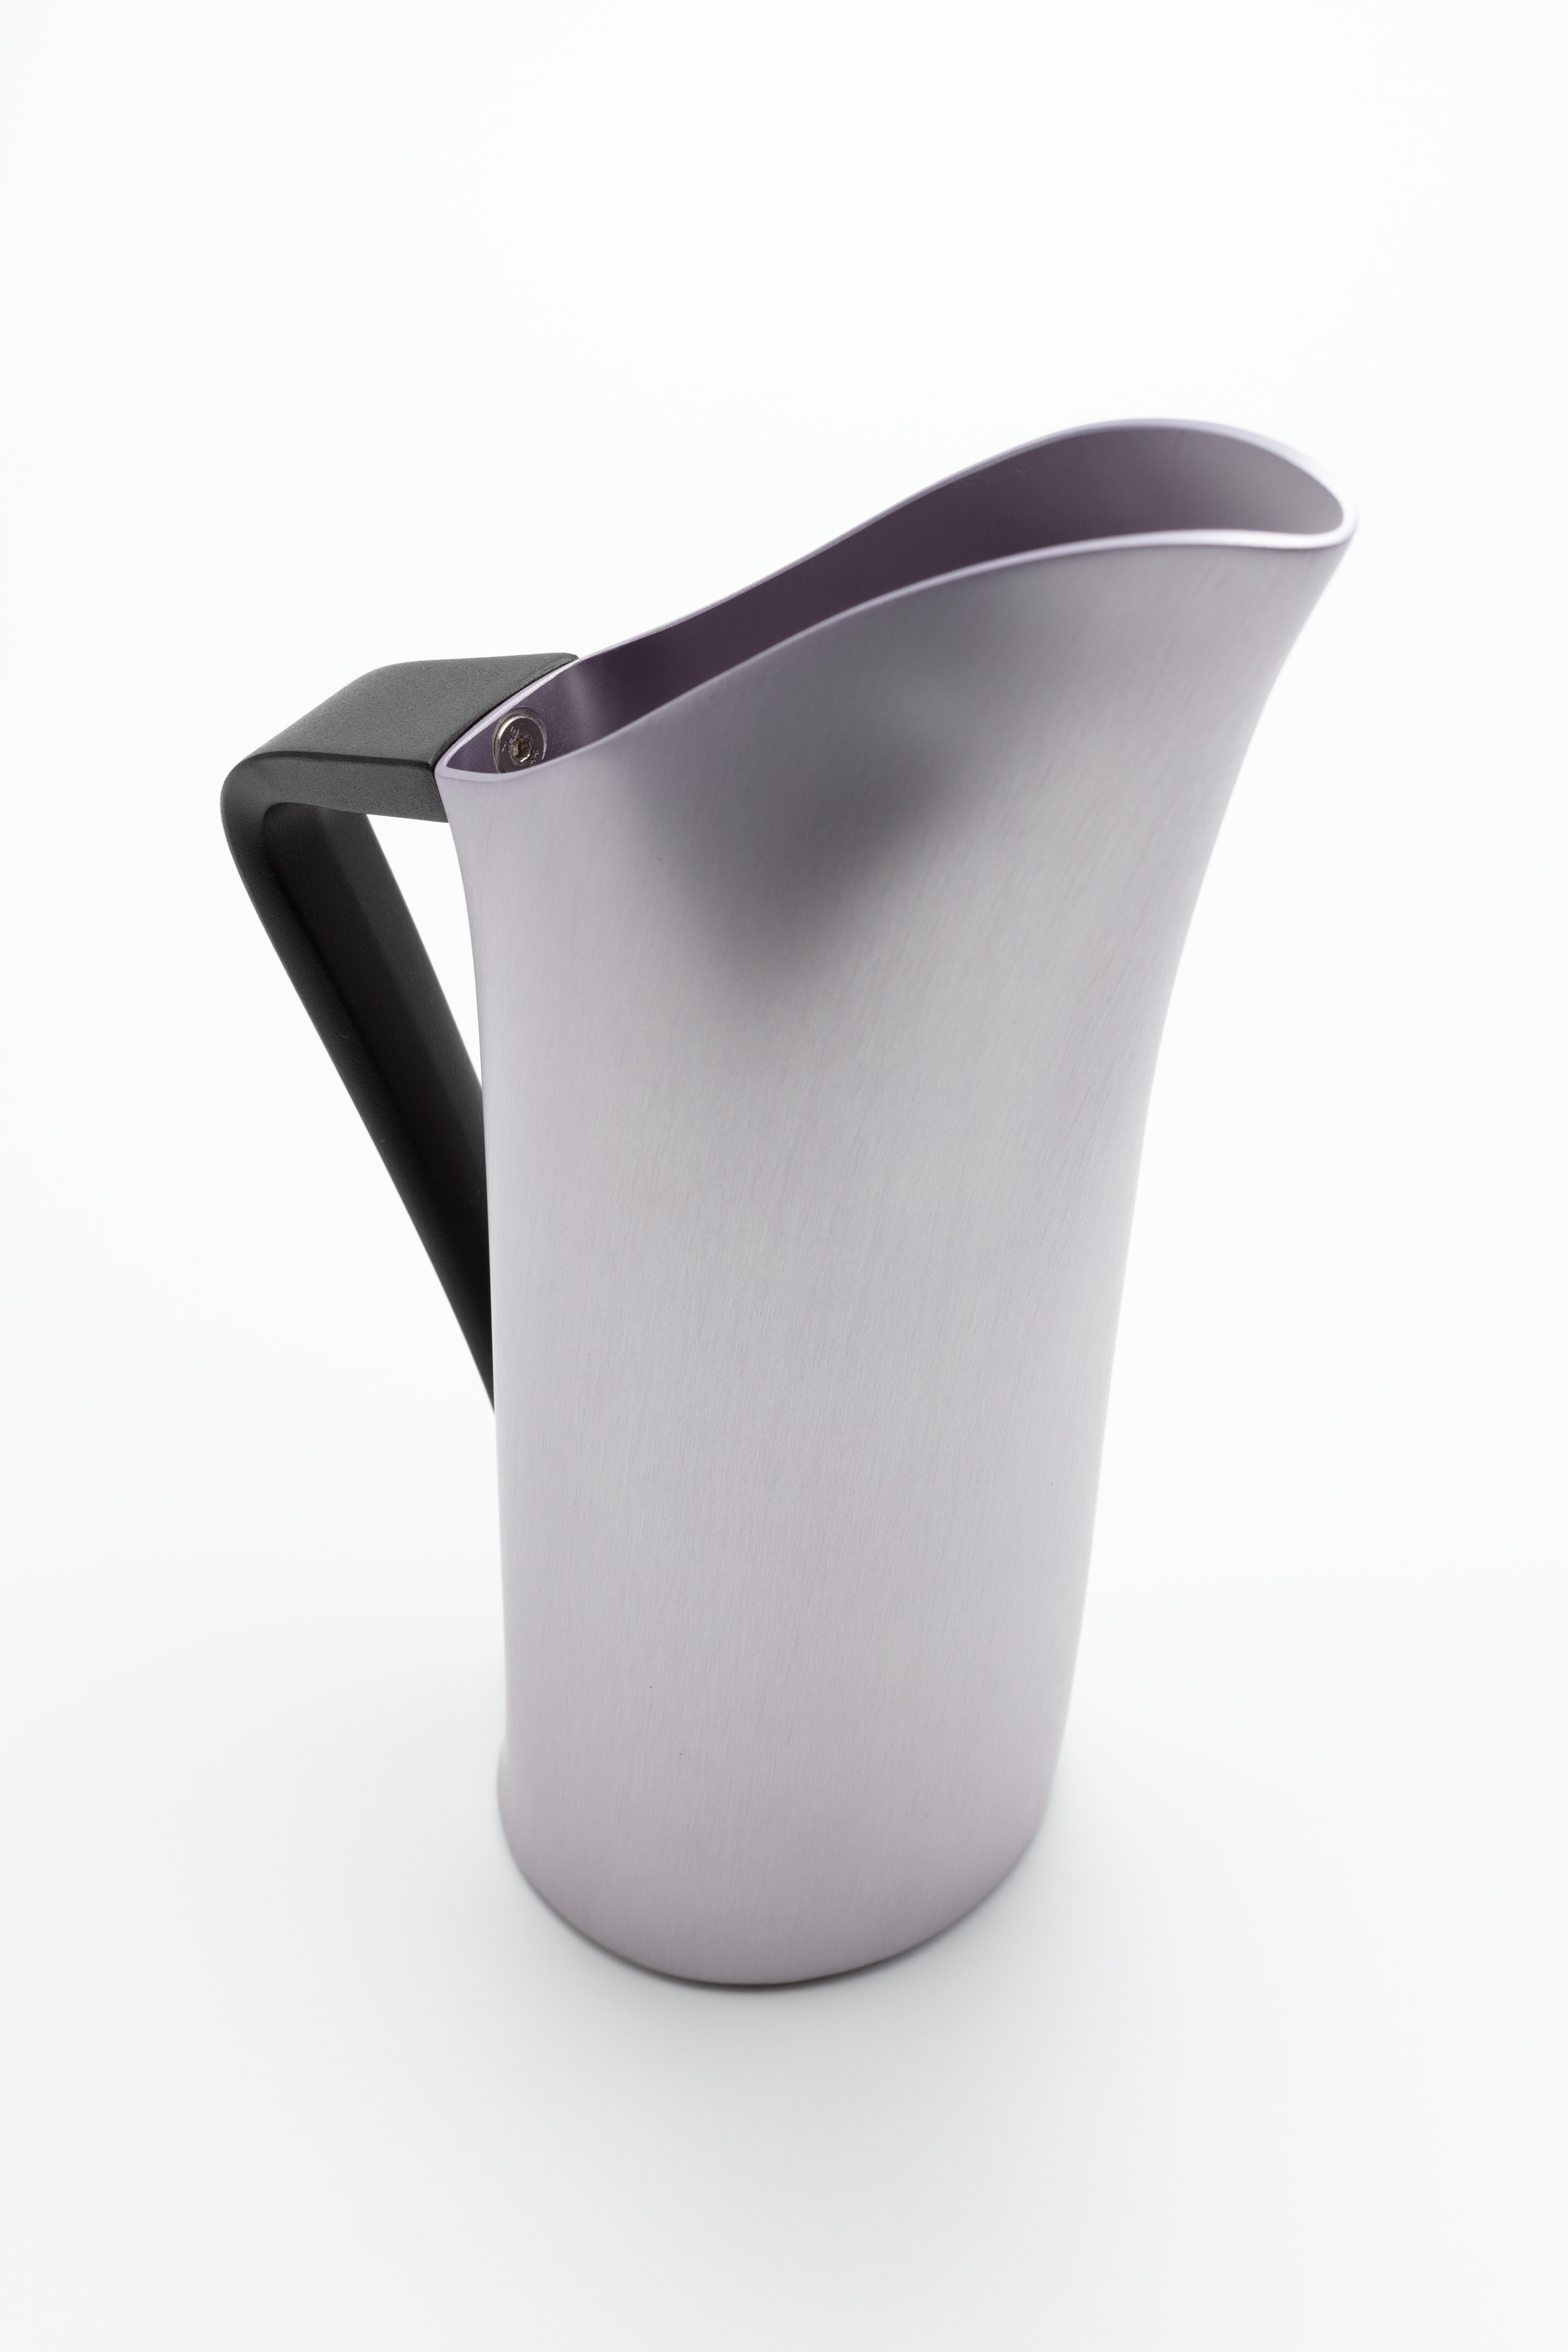 Fink water jug by Robert Foster